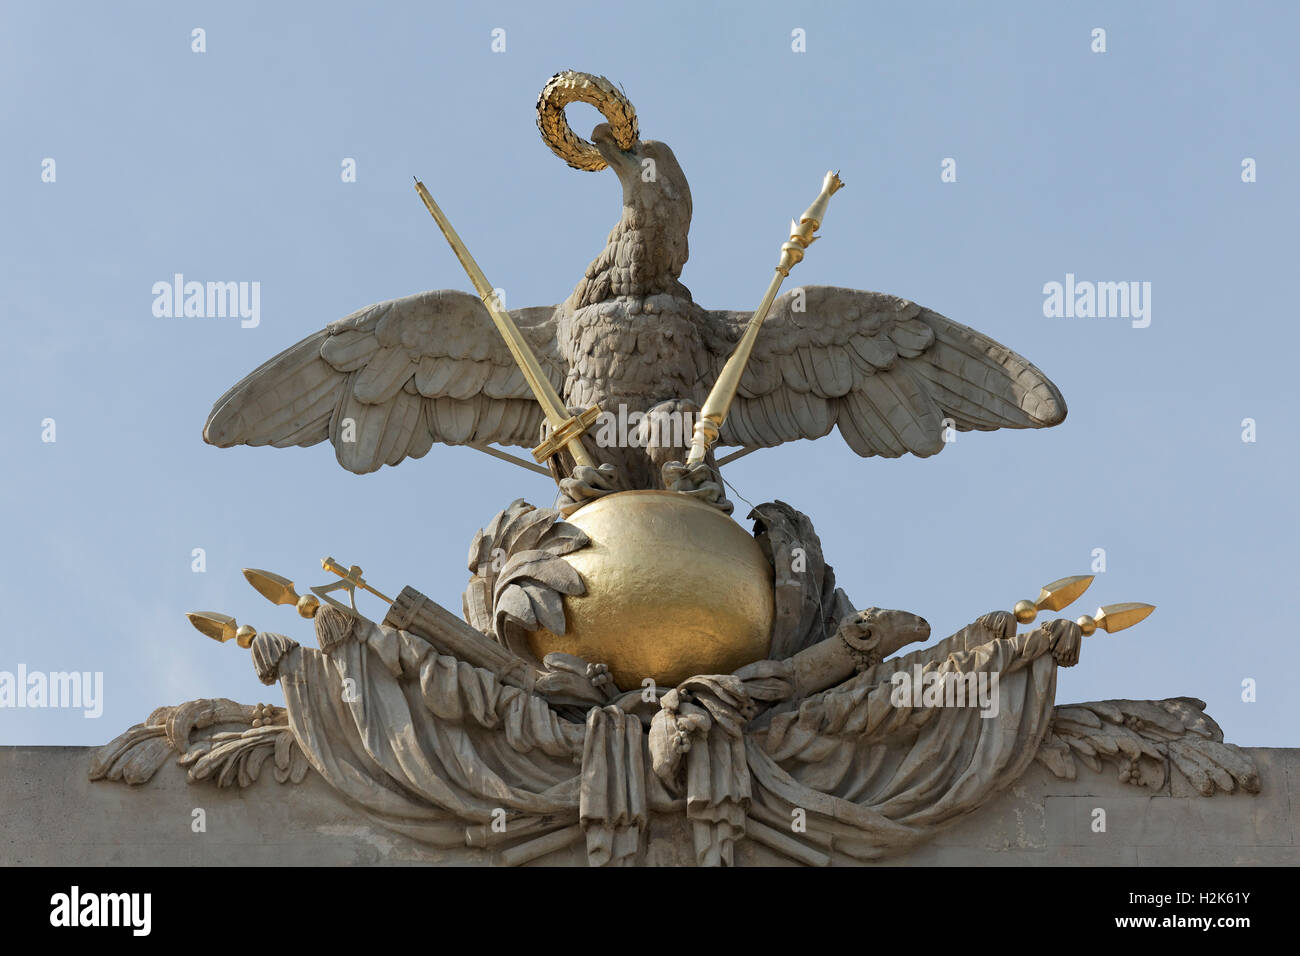 Kaiserliche Adler auf Globus mit Zepter, Schwert und Krone, Portal,  Gloriette, Schloss Schönbrunn, Hietzing, Wien, Österreich Stockfotografie -  Alamy